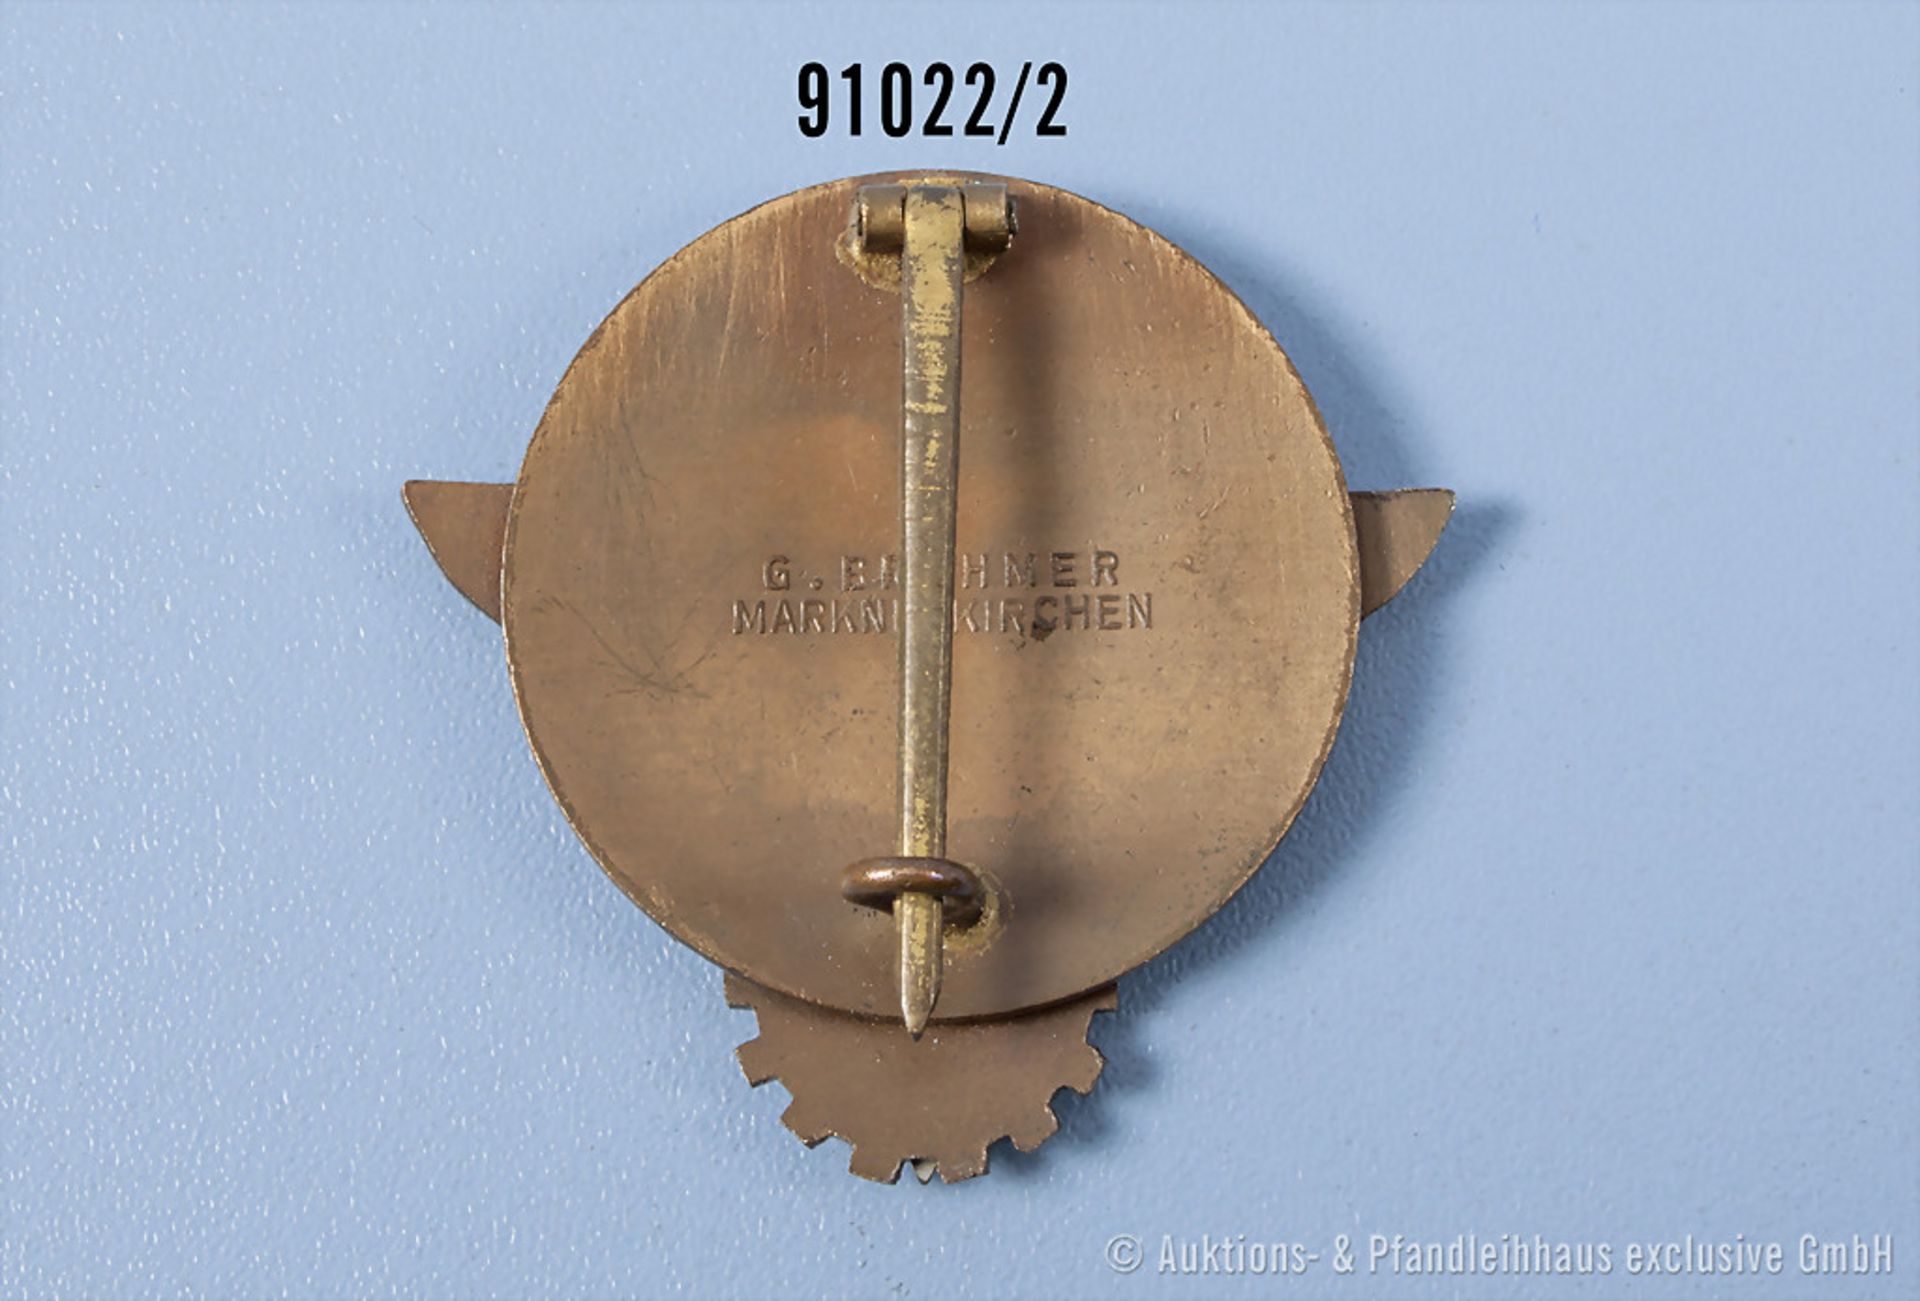 Abzeichen für Kreissieger 1938, Hersteller "G. Brehmer Markneukirchen", Emaillechip in ... - Bild 2 aus 2